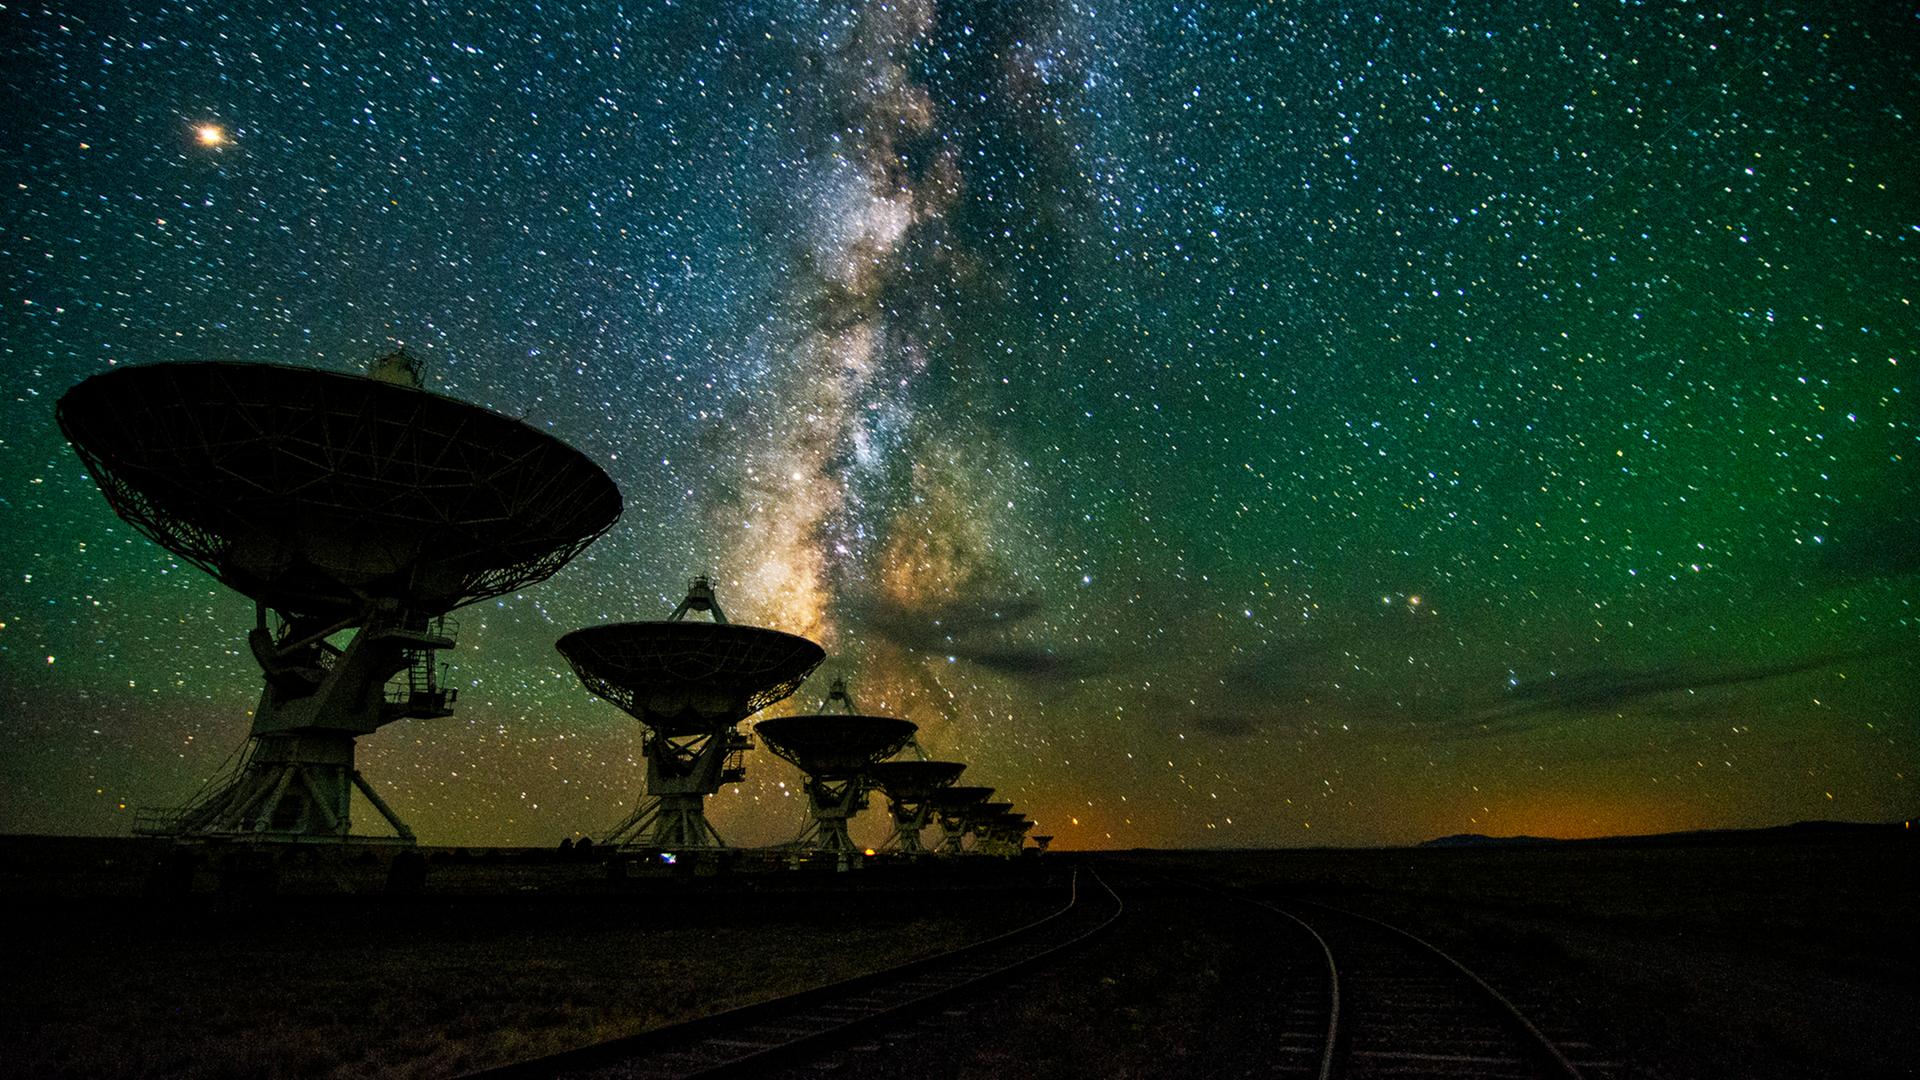 Eine Reihe von Teleskopen vor dem nächtlichen Sternenhimmel